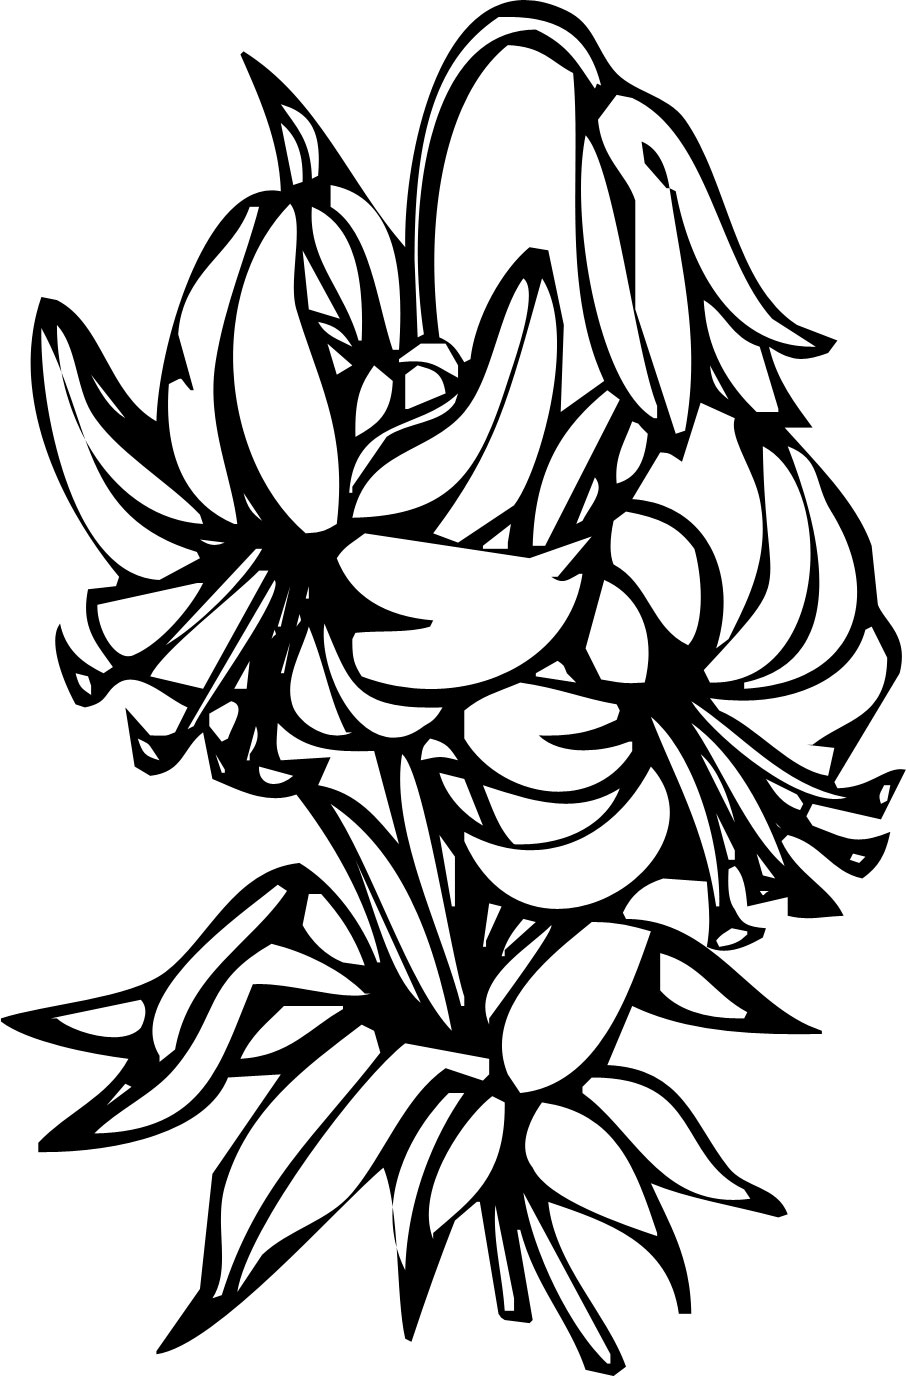 花のイラスト フリー素材 白黒 モノクロno 139 白黒 ユリ 百合